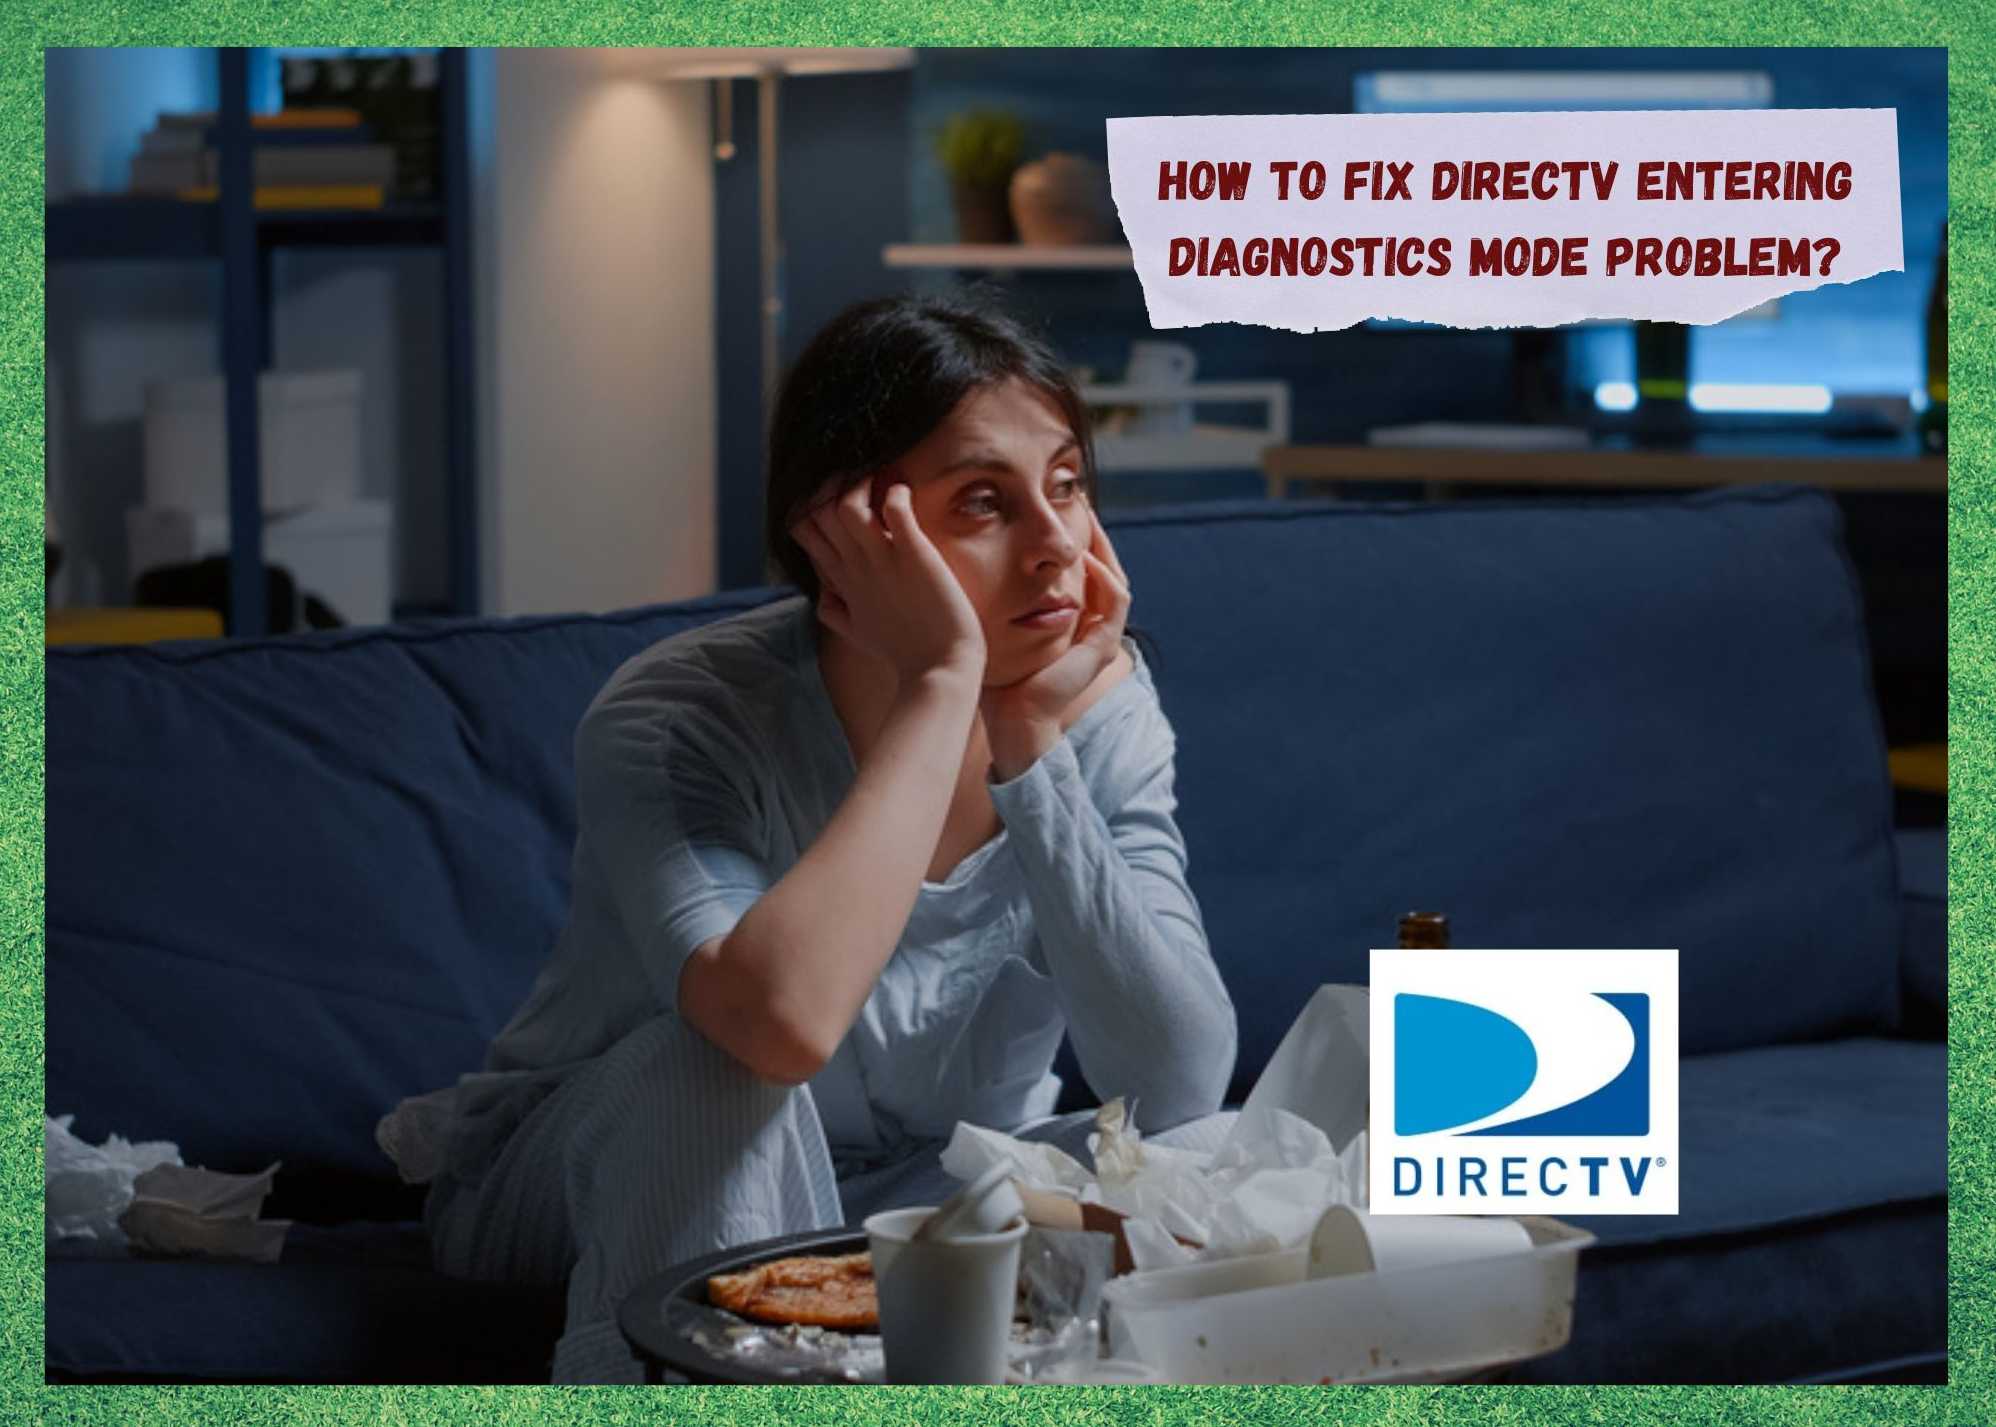 "DirecTV" įveda diagnostikos režimą: 4 būdai, kaip ištaisyti